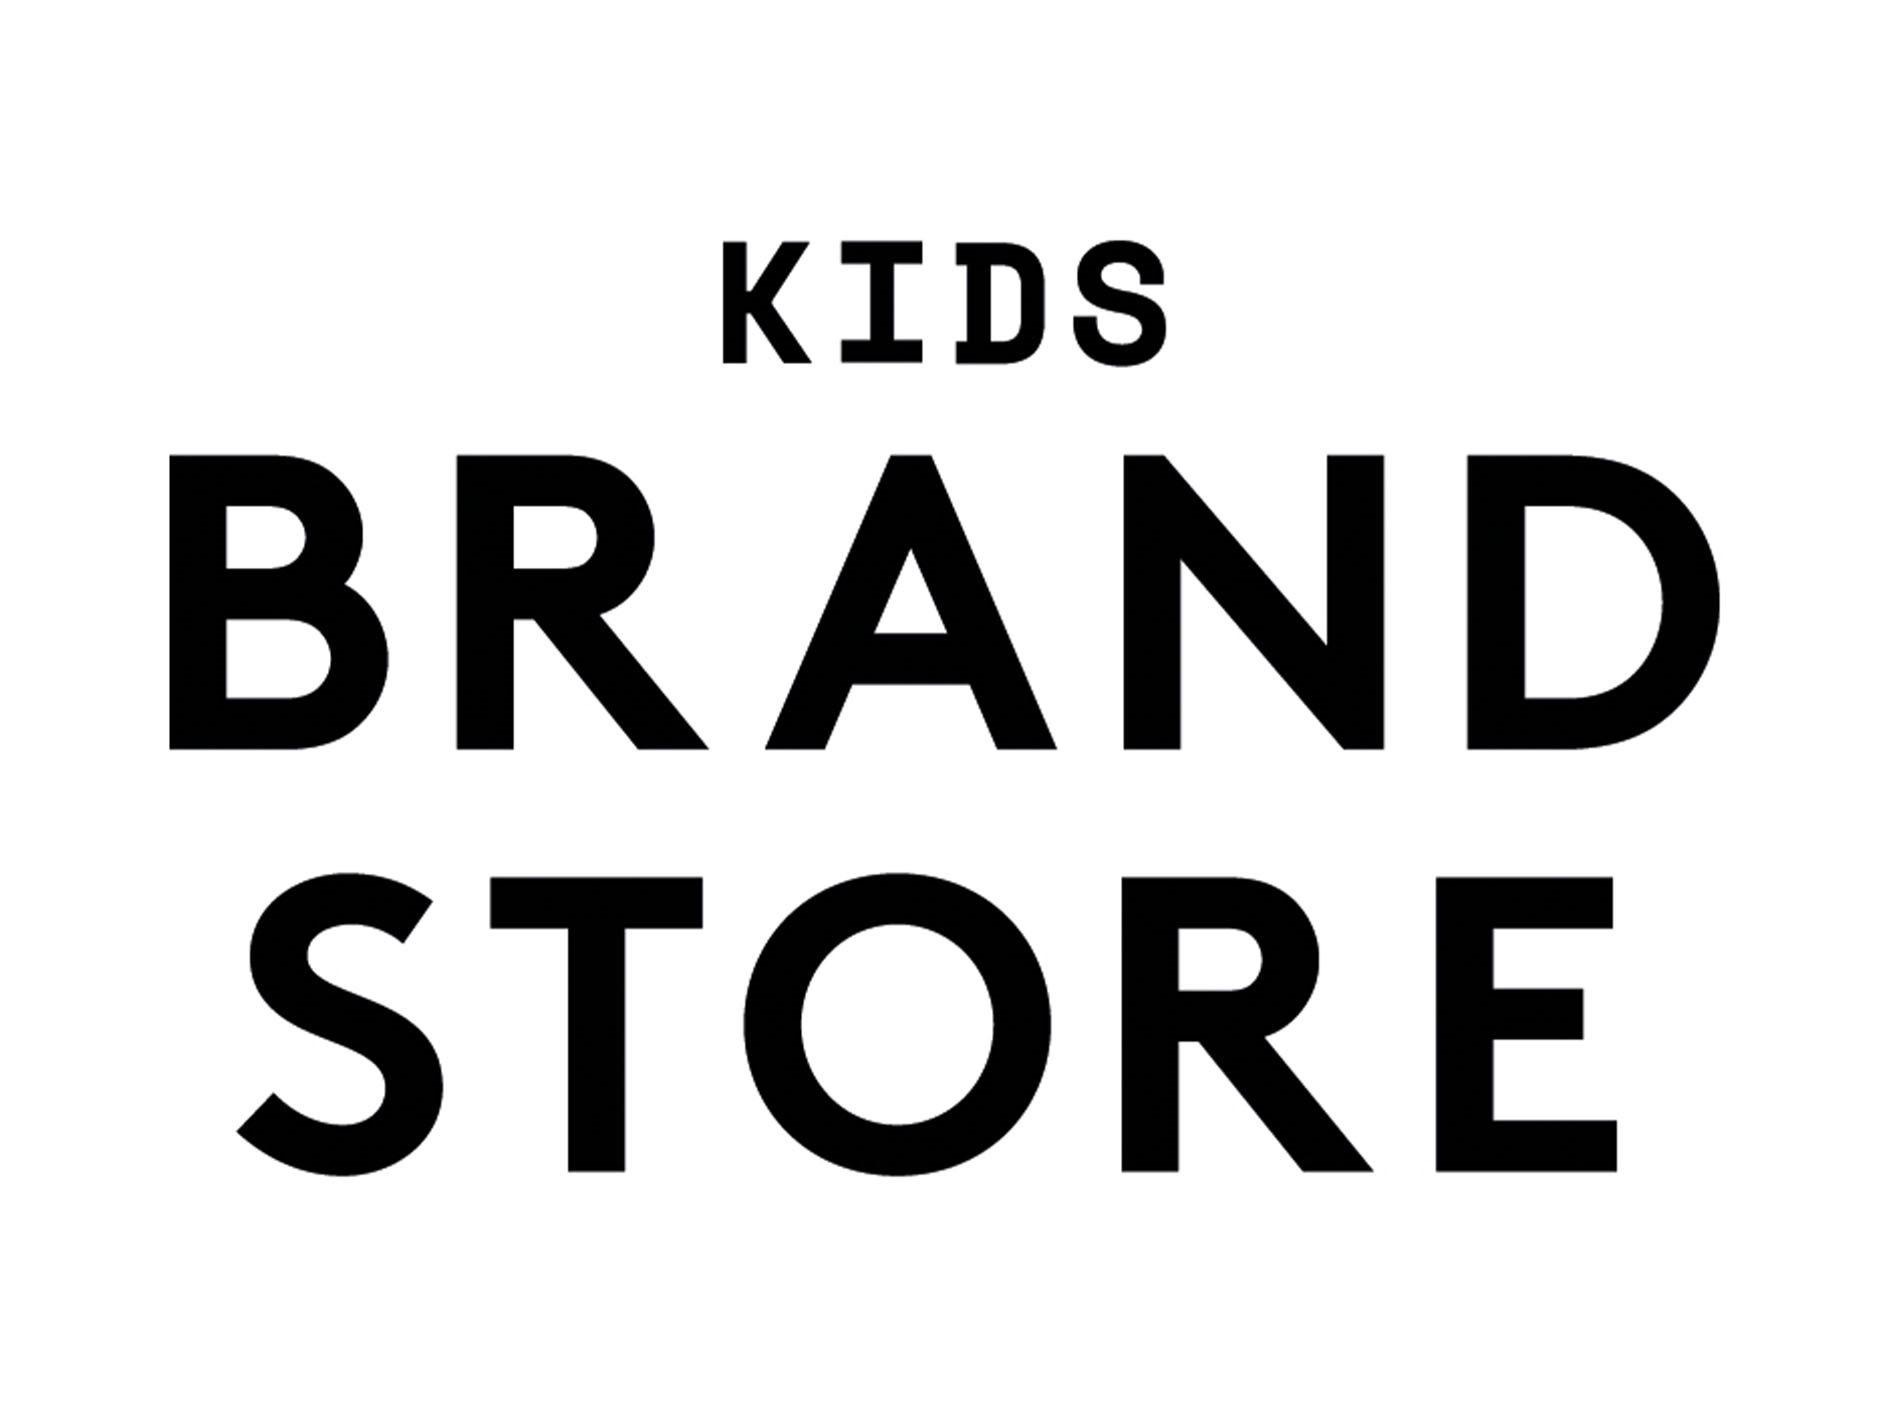 Kids Brand Store